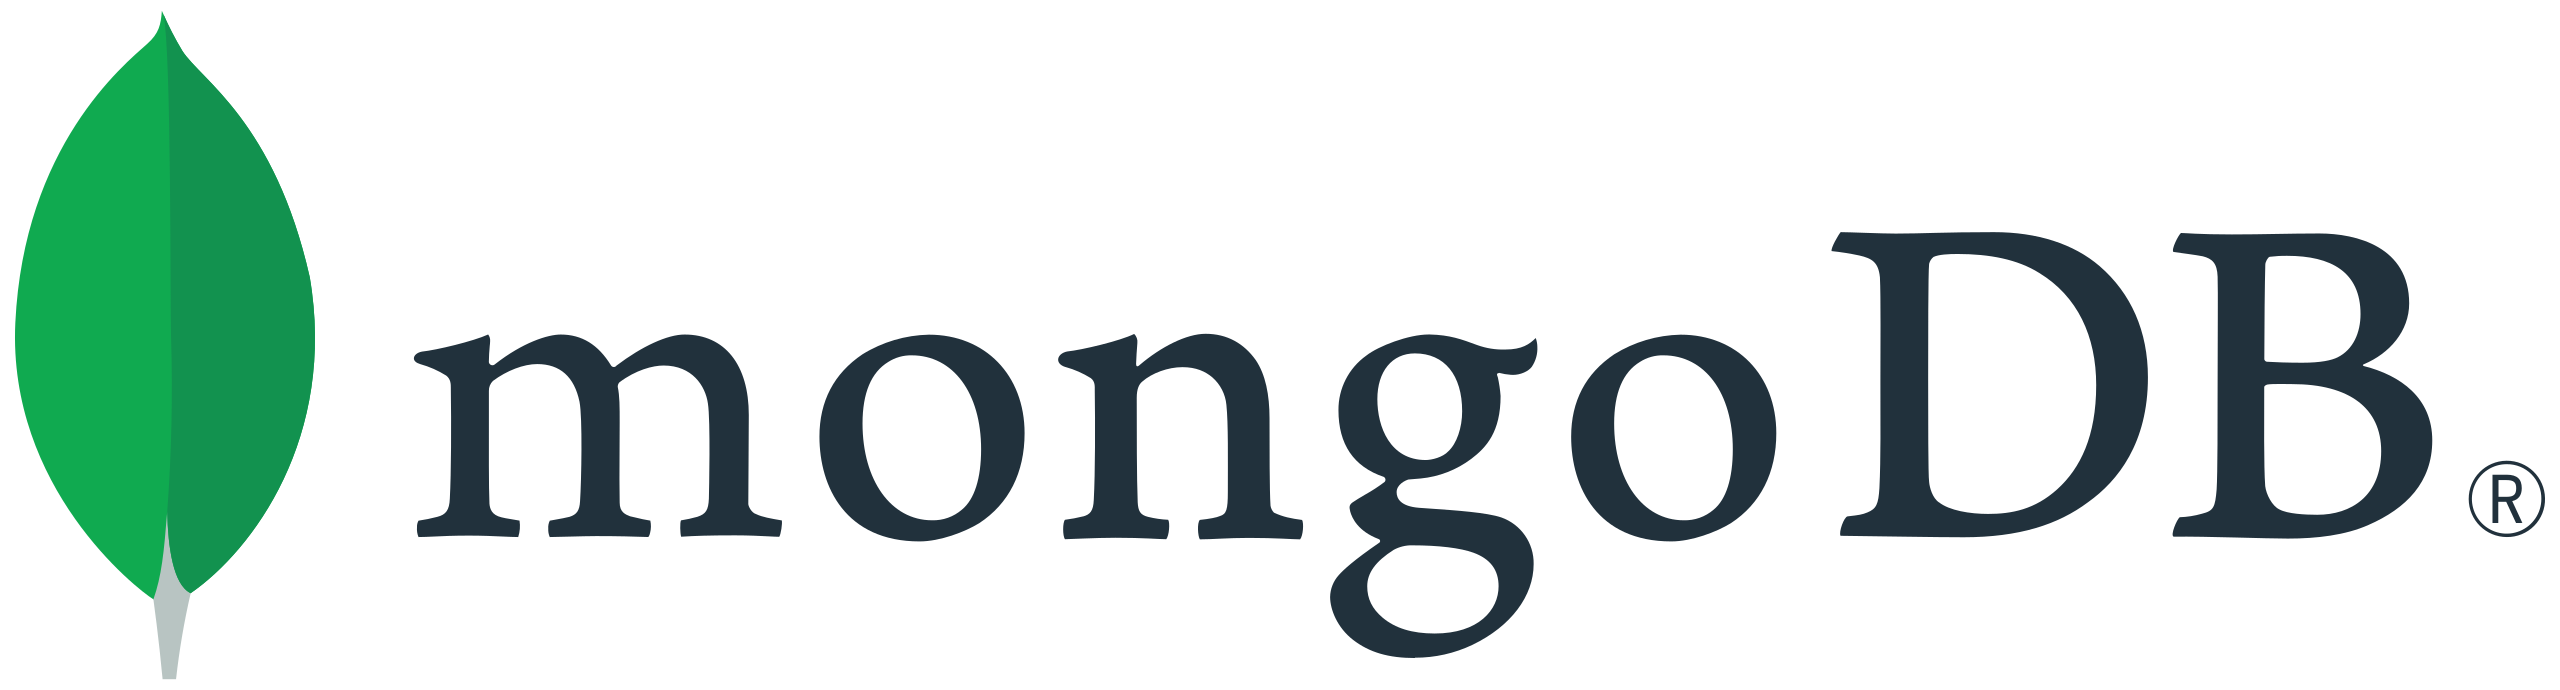 tools-logo